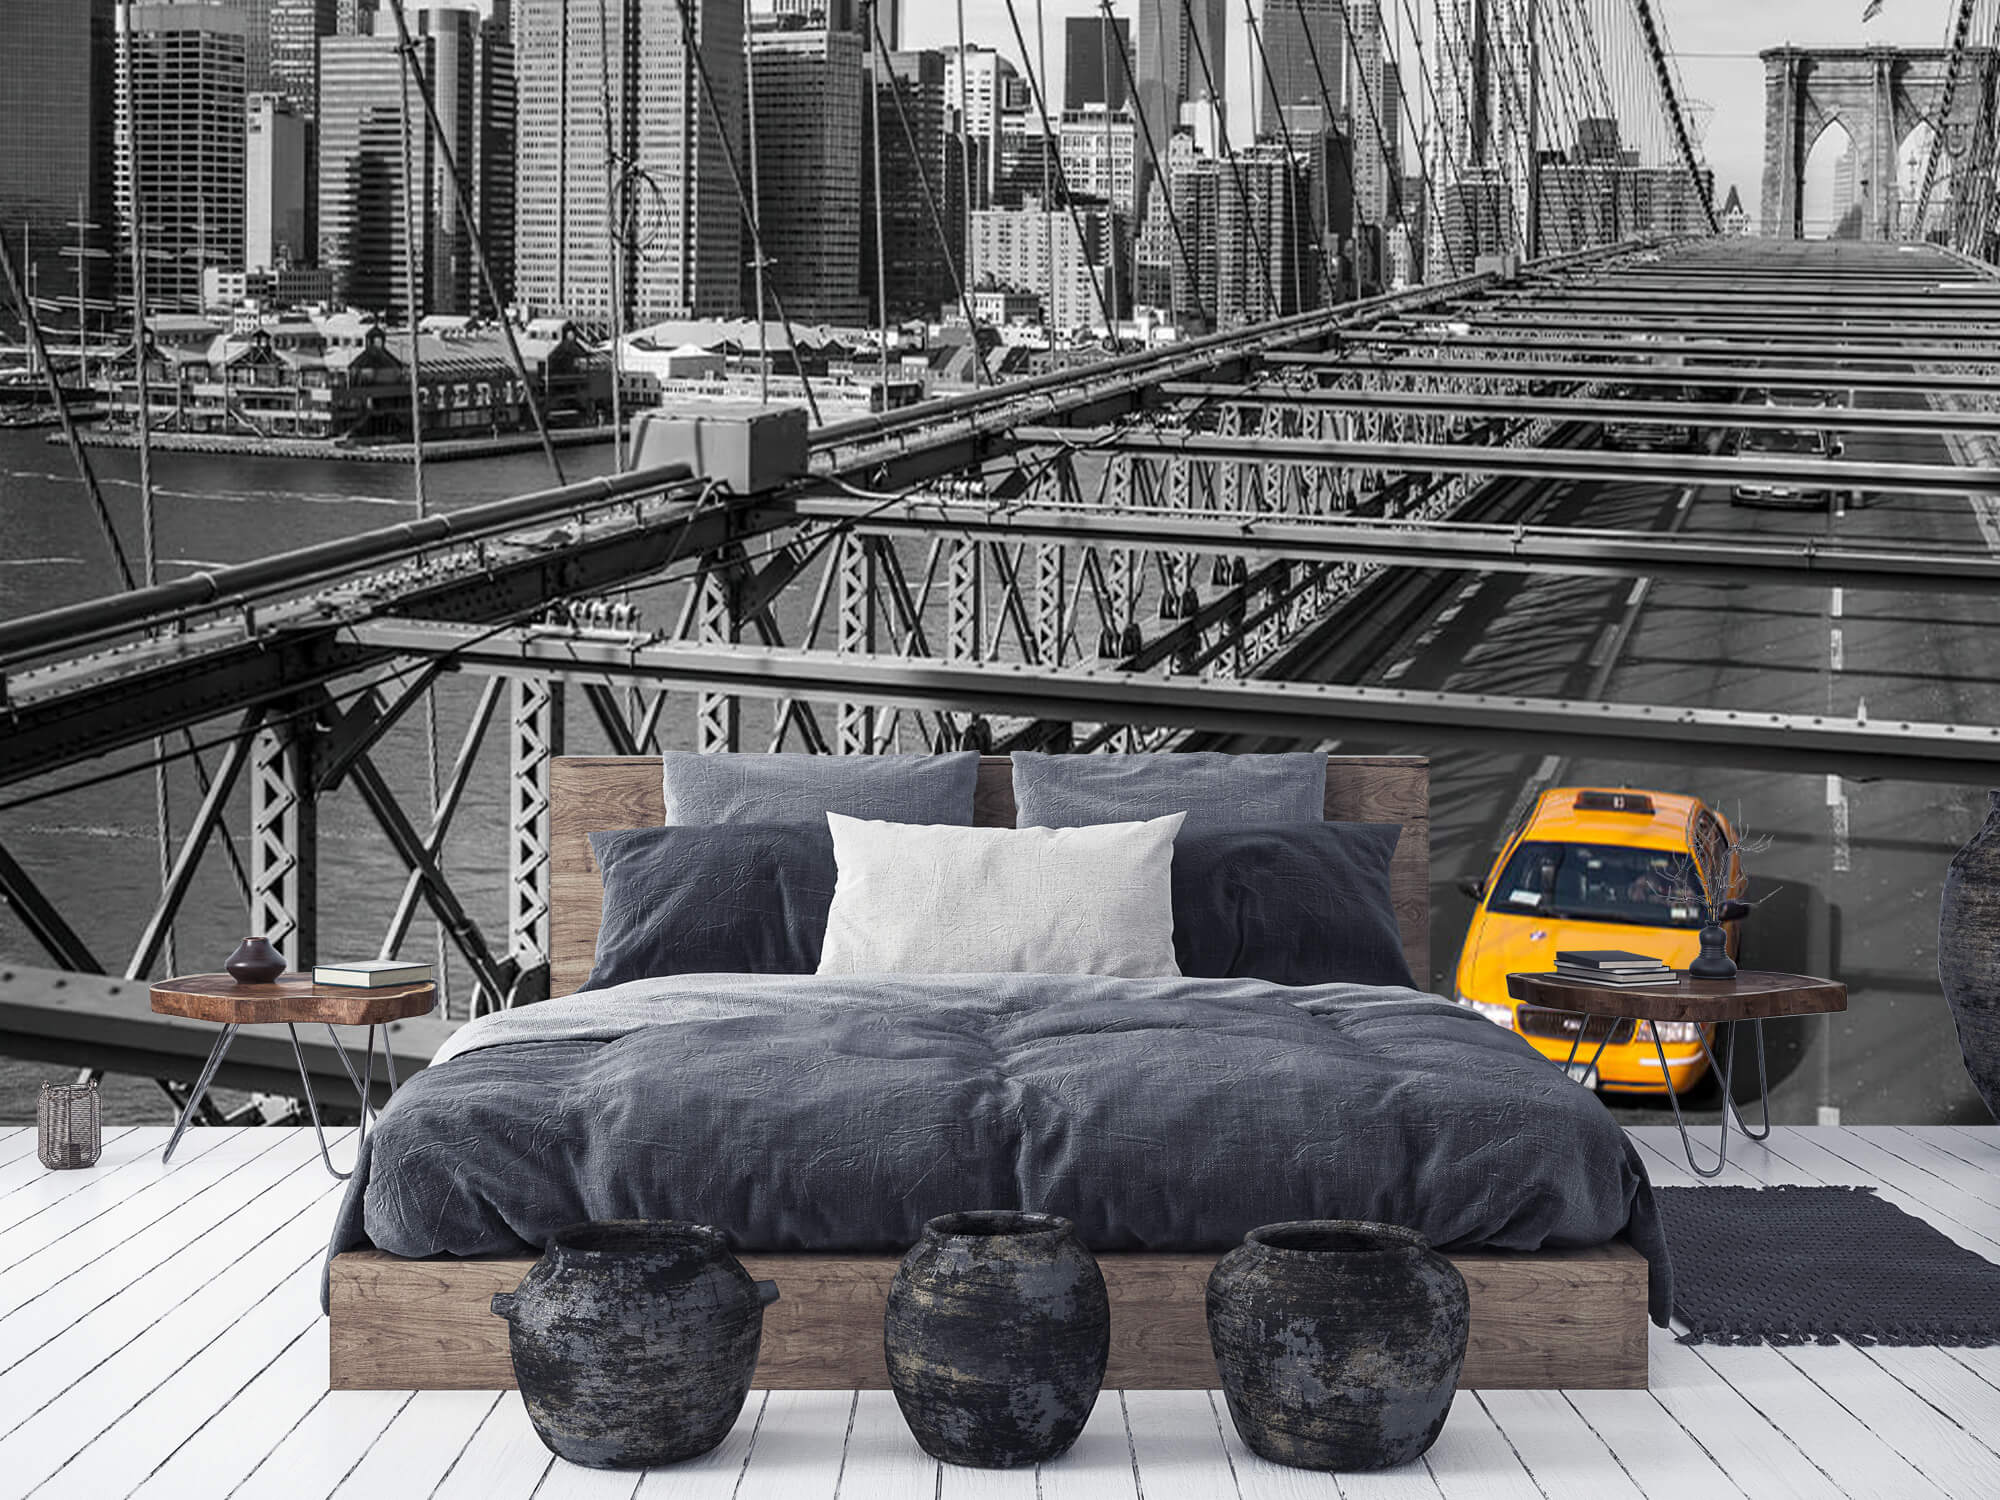  Papel pintado con Un taxi a través del puente de Brooklyn - Habitación de adolescentes 9